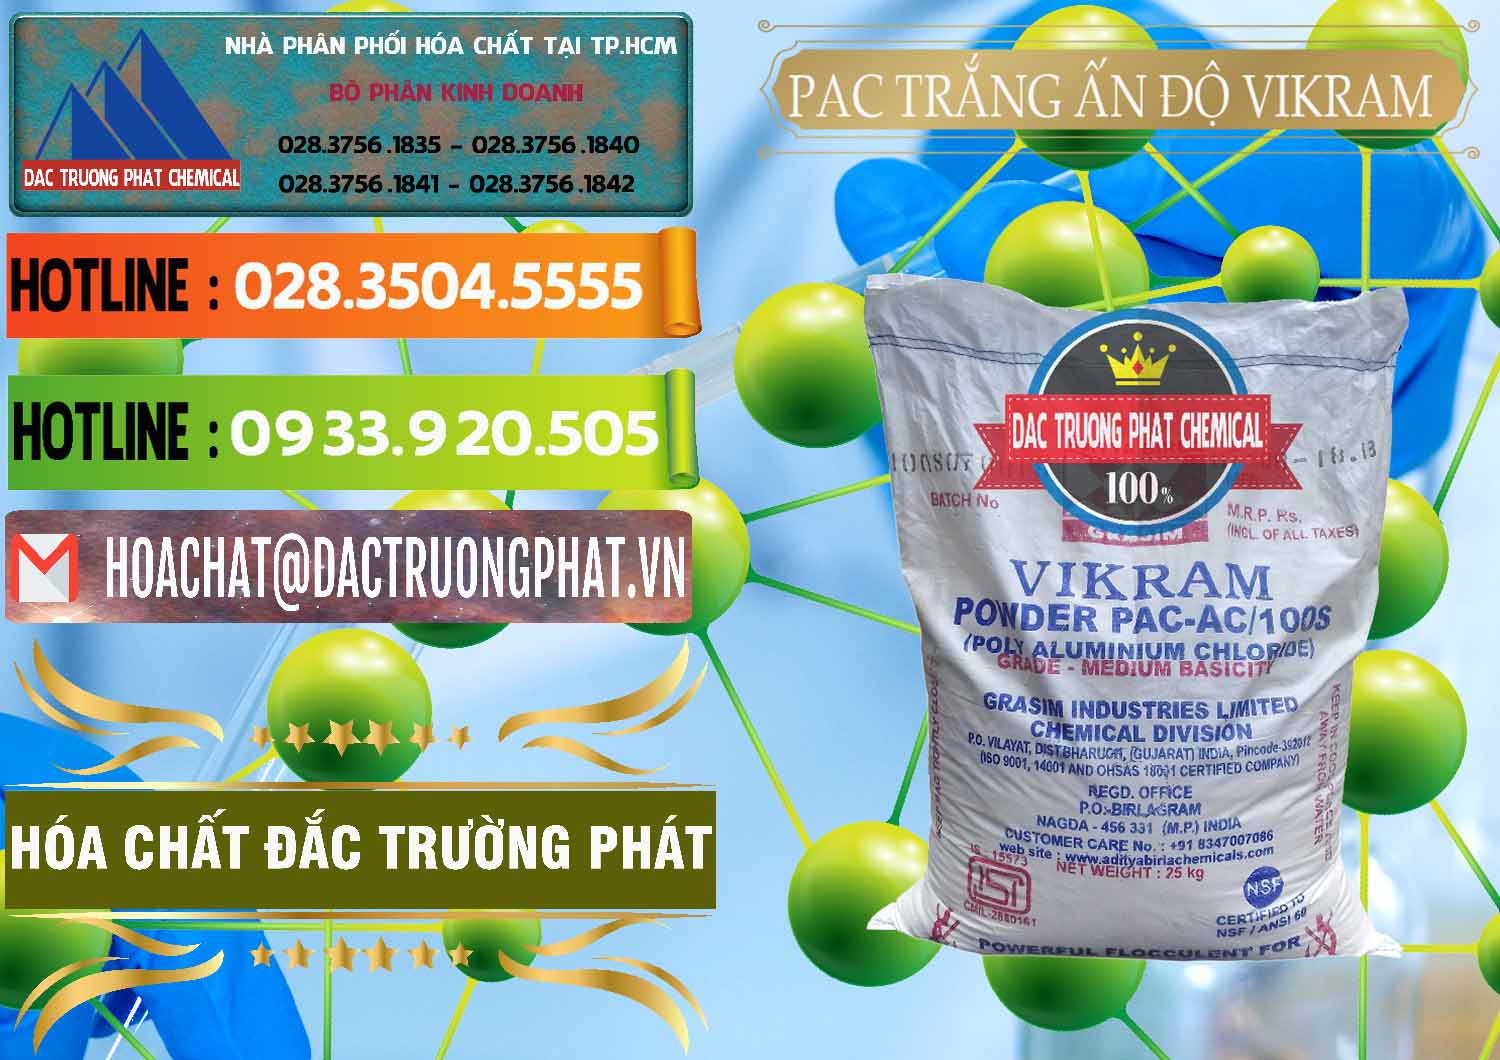 Đơn vị chuyên nhập khẩu - bán PAC - Polyaluminium Chloride Ấn Độ India Vikram - 0120 - Nơi phân phối & cung cấp hóa chất tại TP.HCM - cungcaphoachat.com.vn